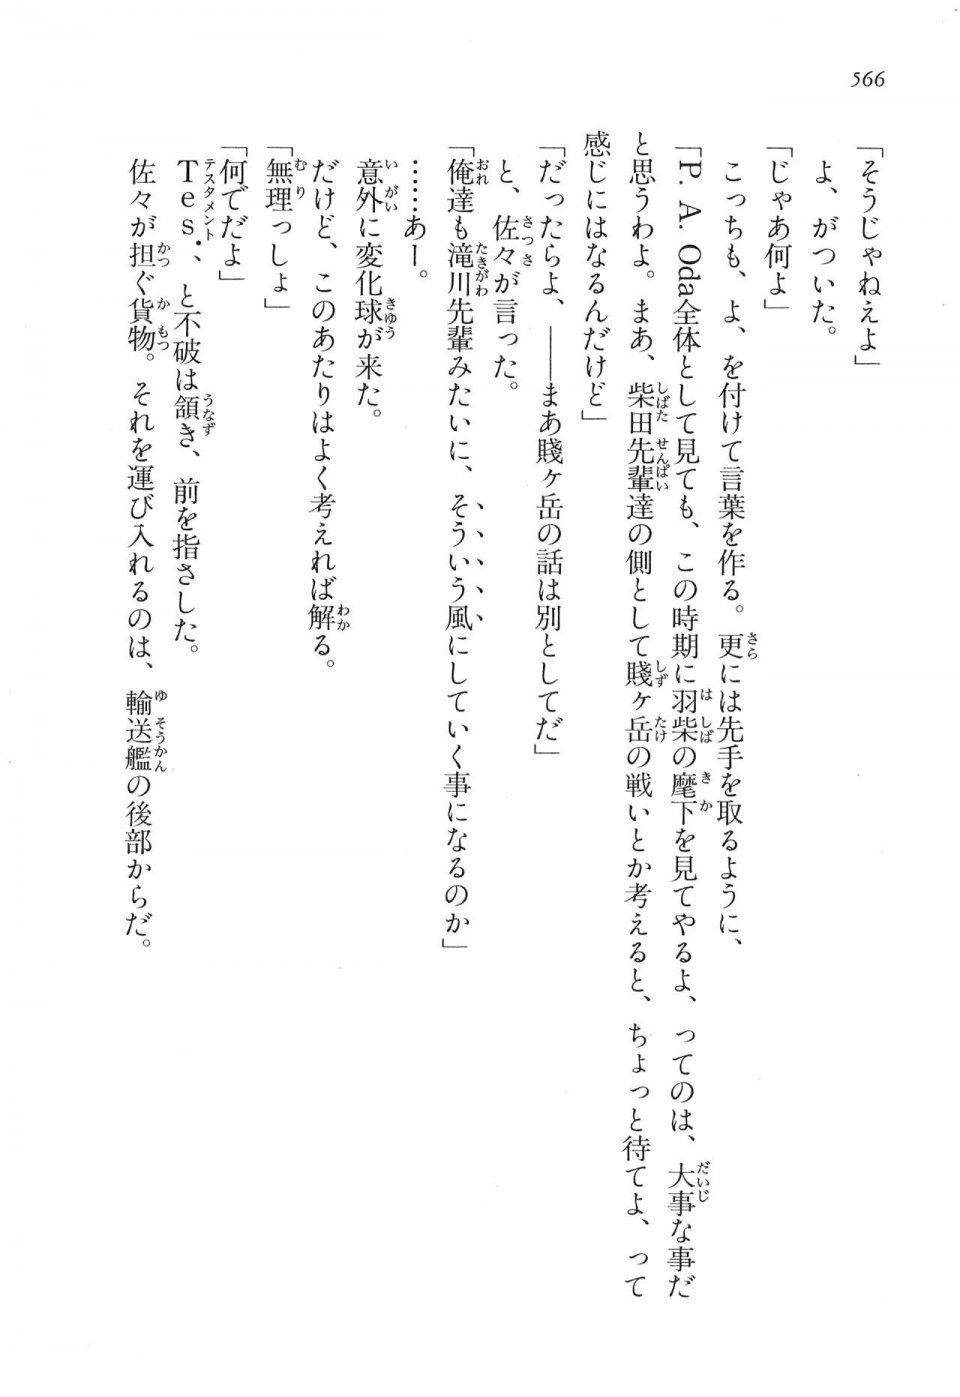 Kyoukai Senjou no Horizon LN Vol 16(7A) - Photo #566